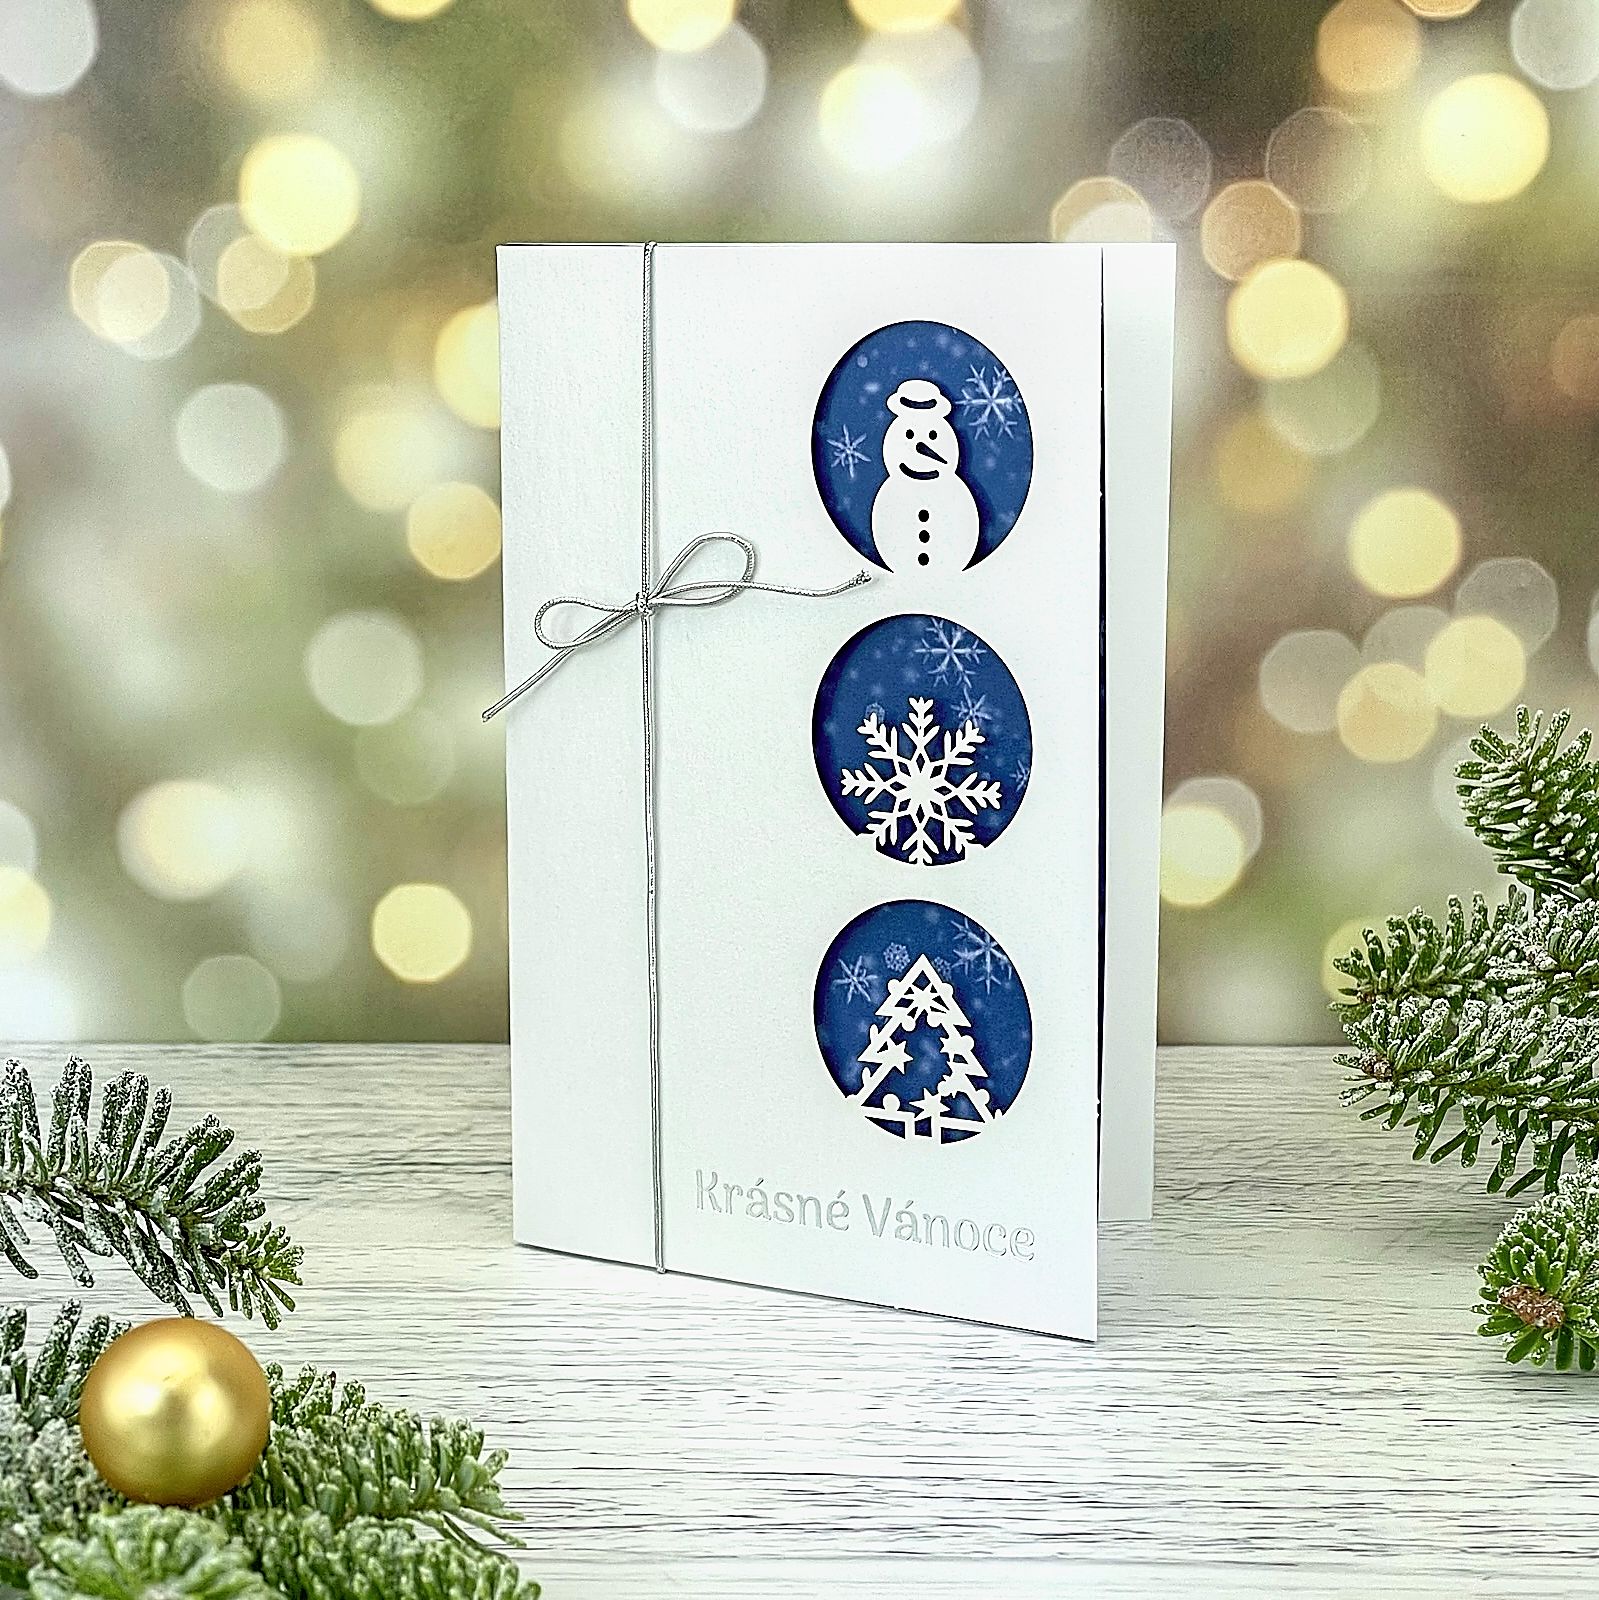 Novoroční–vánoční přání z bílého perleťového papíru s laserovanými zimními symboly - sněhulák, vločka, stromeček, doplněnými stříbrnou ražbou a mašličkou ze stříbrné pruženky; otevírací, formát 100 × 150 mm.